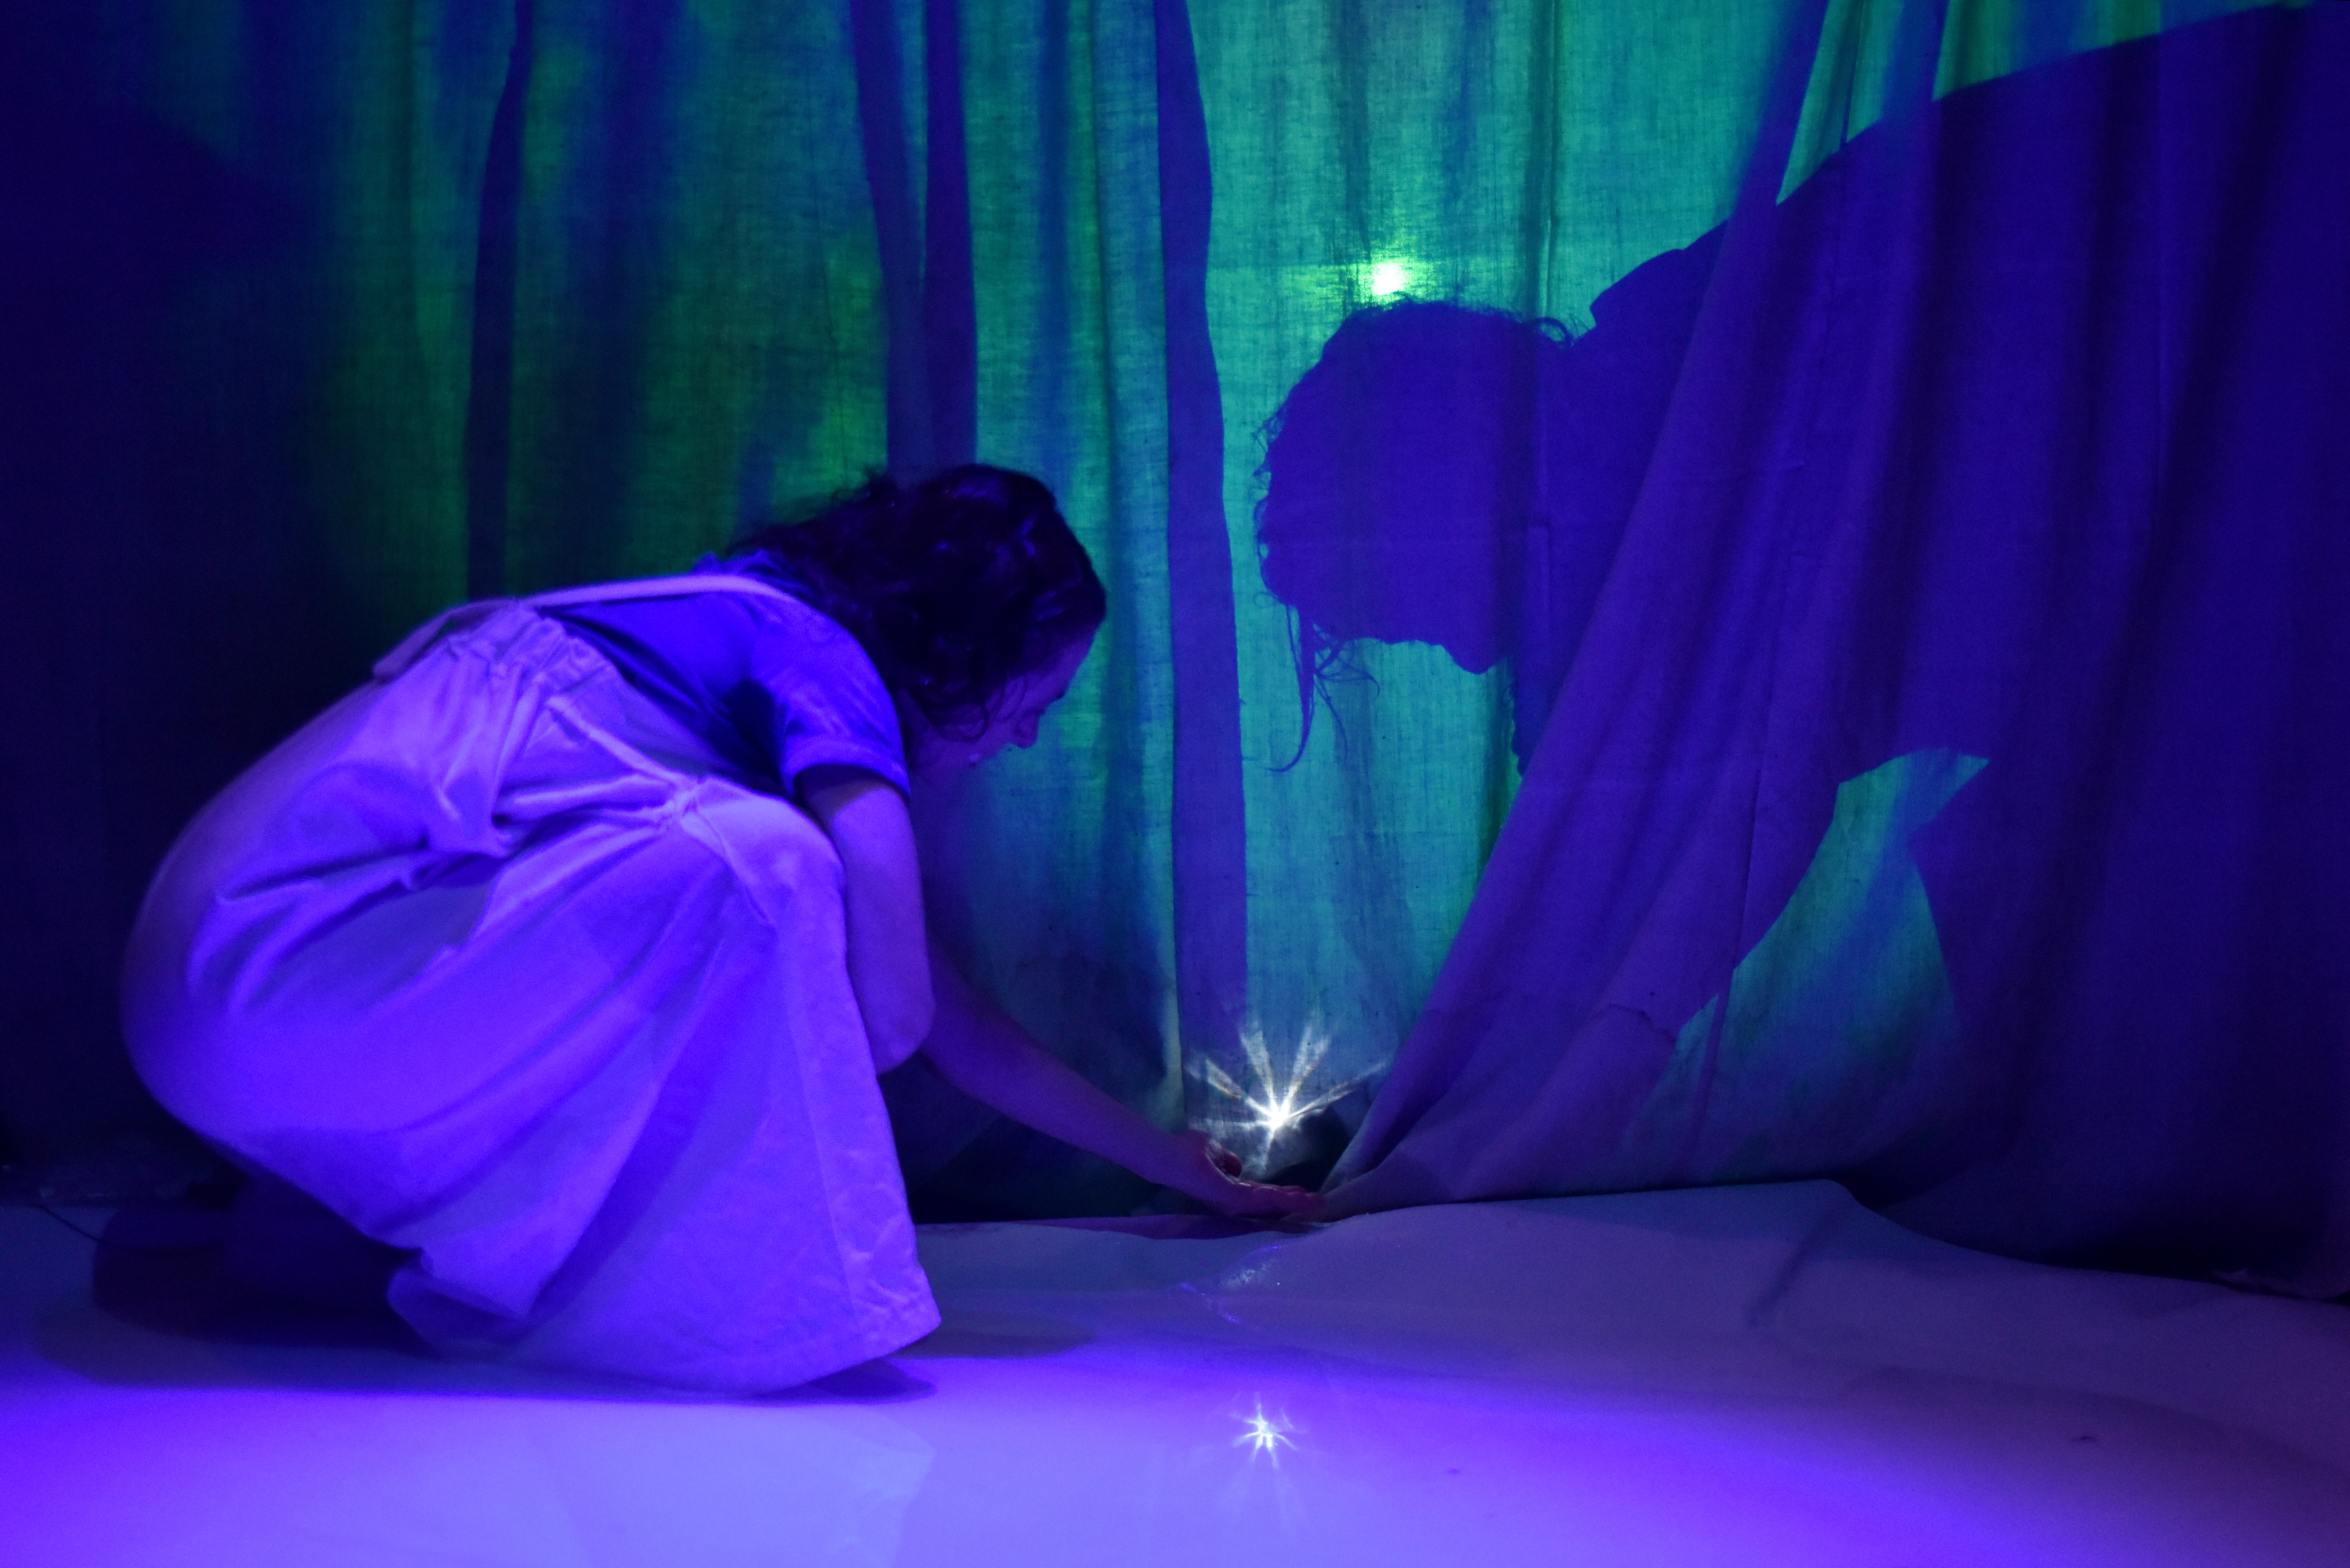 Samira Wenzel hält ein kleines helles Licht in der Hand, das sich in der nassen Bühnenoberfläche einspiegelt. Sie ist umgeben von diffusem, blau, grünem Licht und zarten Vorhängen.